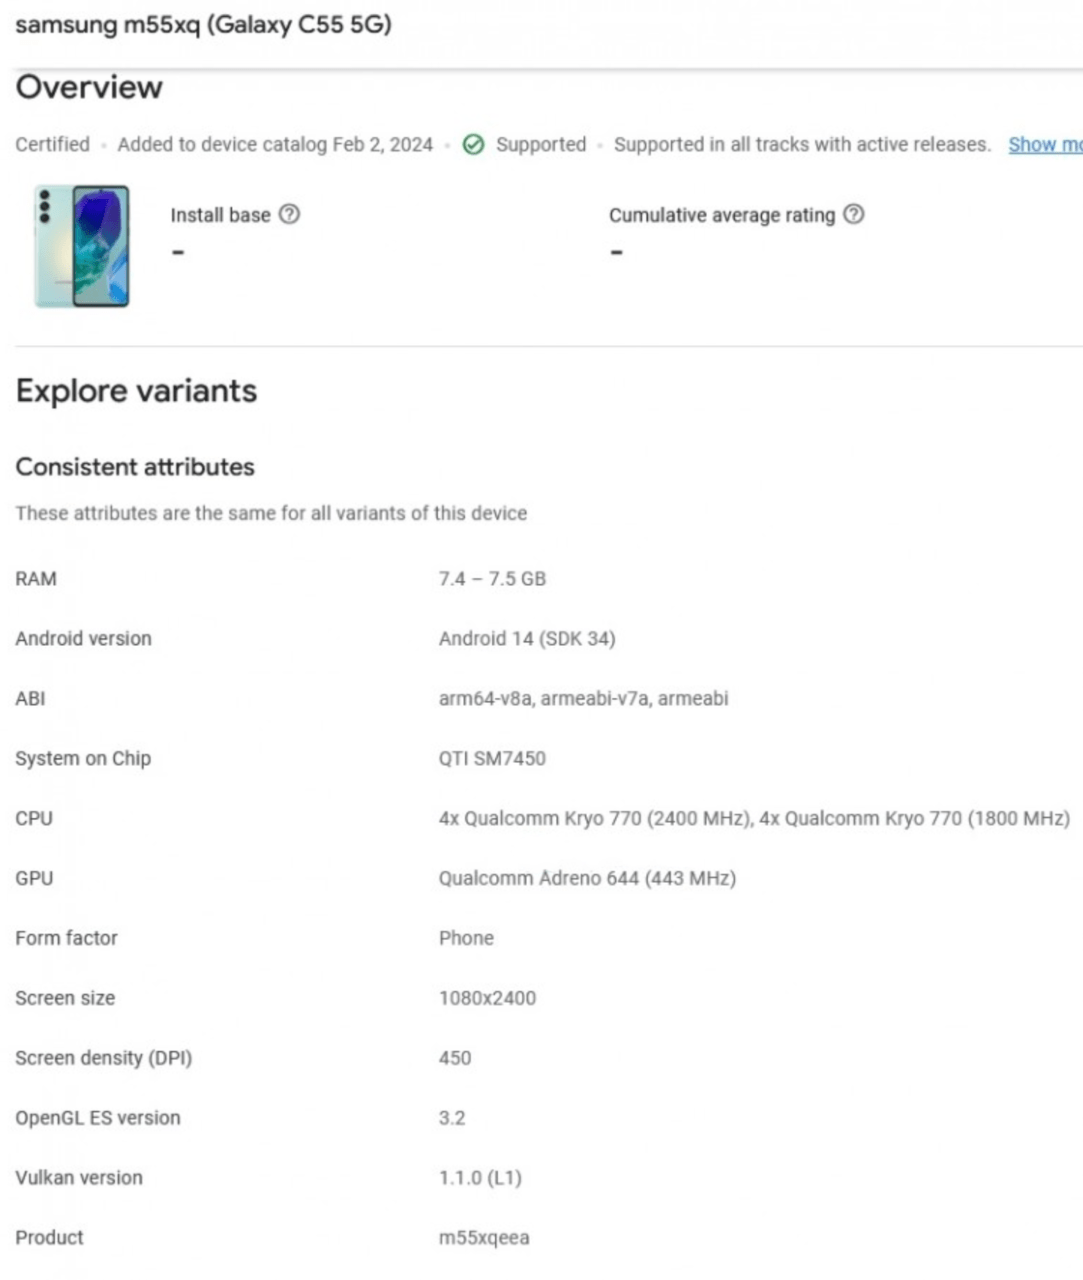 Zrzut ekranu przedstawiający szczegółowe specyfikacje techniczne smartfonu Samsung m55xq (Galaxy C55 5G), z informacjami o pamięci RAM, wersji systemu Android, procesorze, GPU oraz innych parametrach technicznych urządzenia.